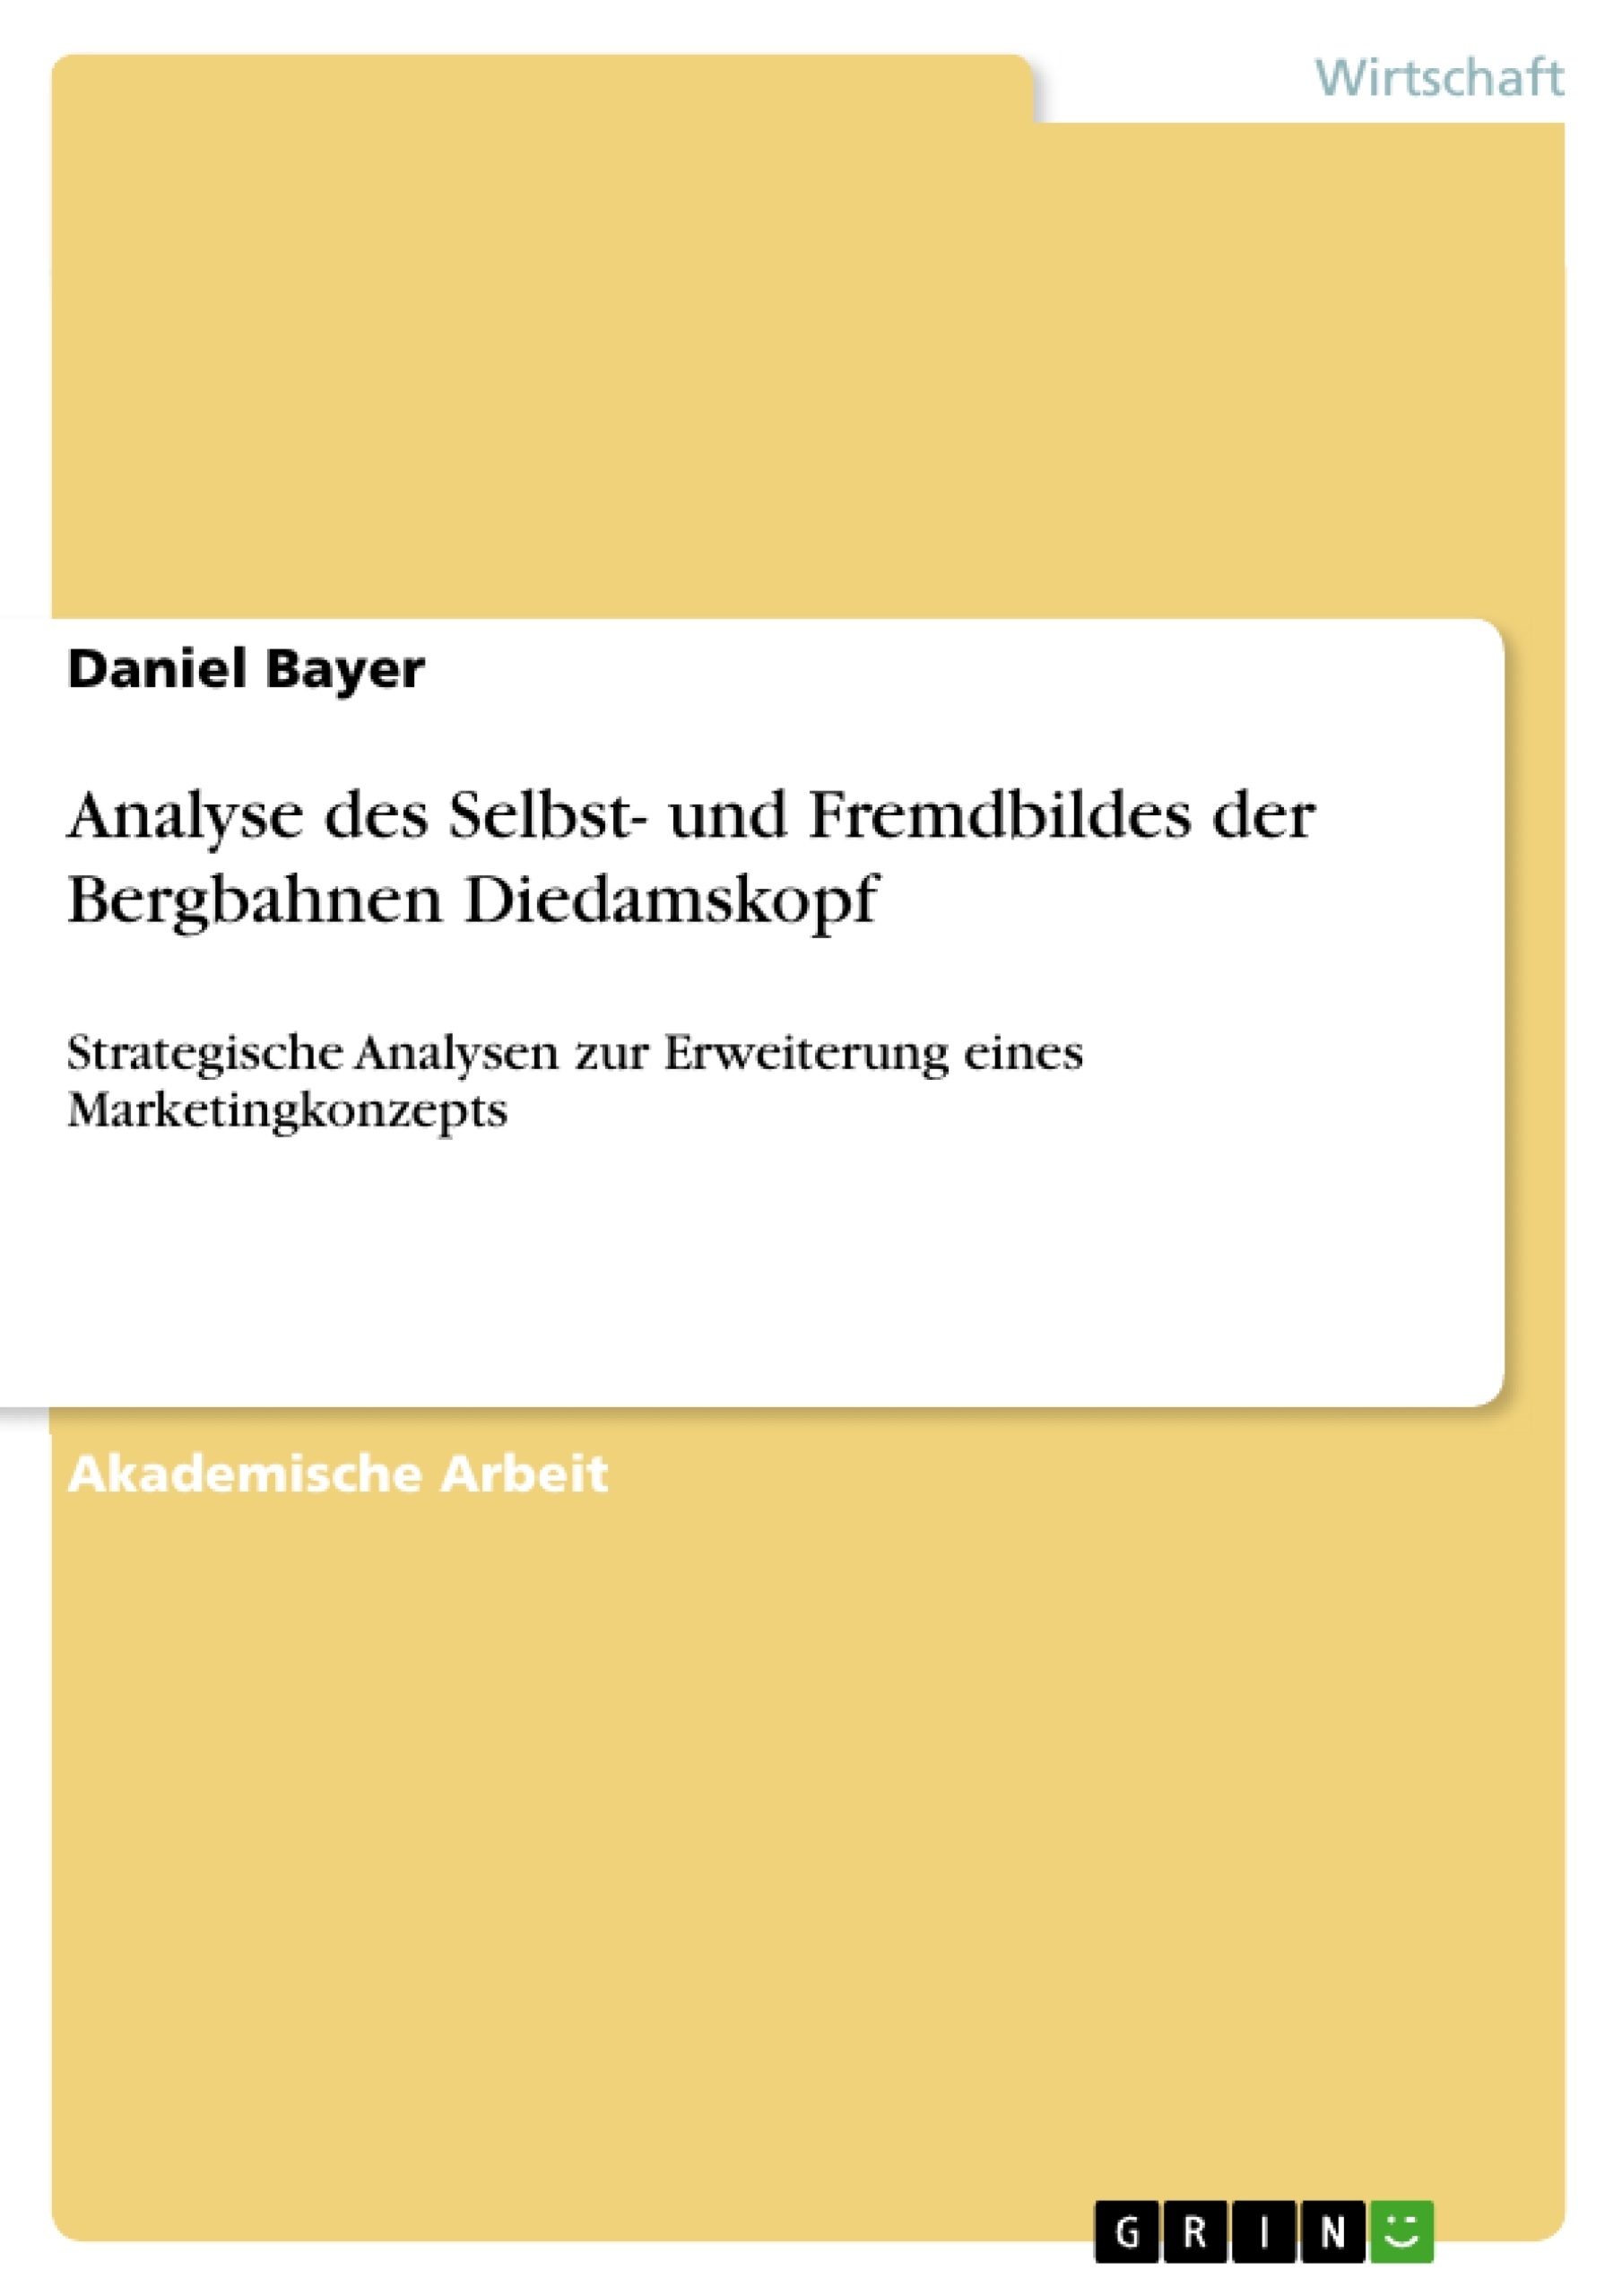 Title: Analyse des Selbst- und Fremdbildes der Bergbahnen Diedamskopf